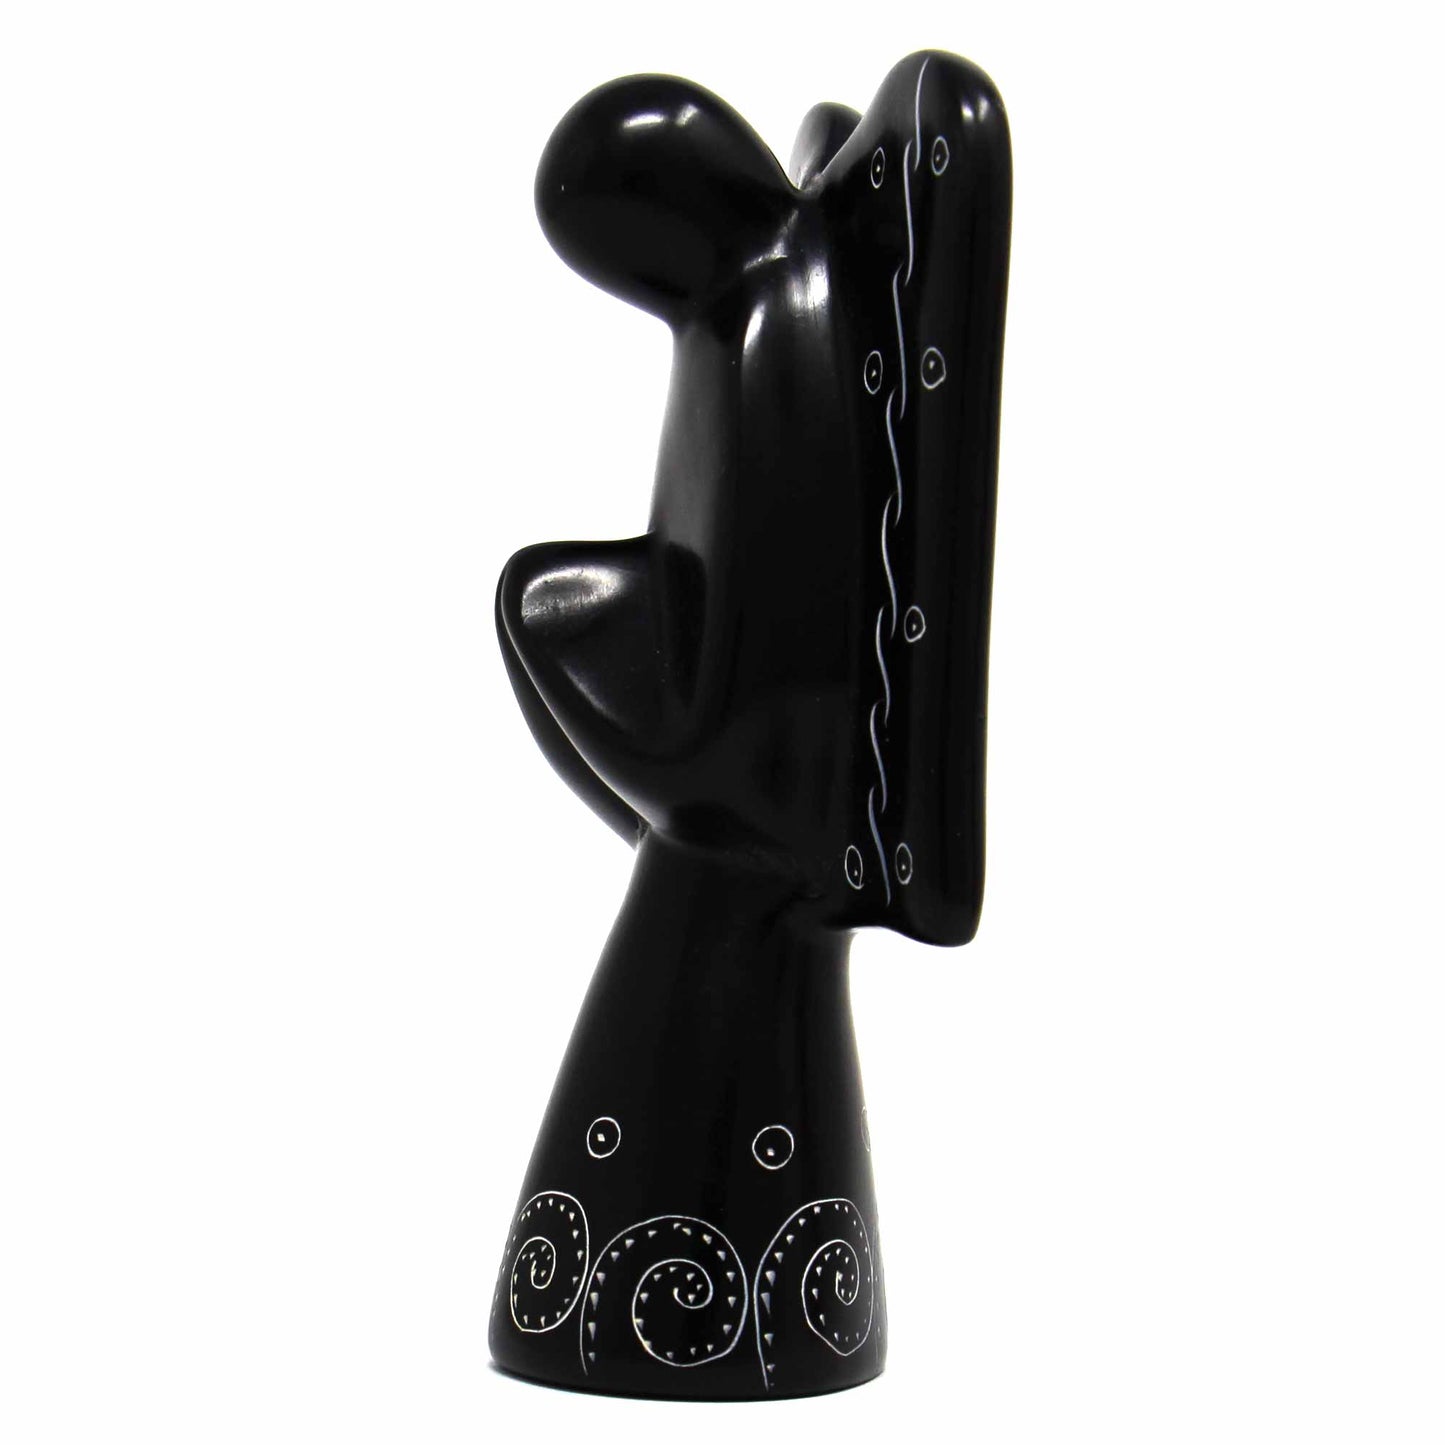 Escultura de ángel de esteatita - Acabado negro con diseño grabado